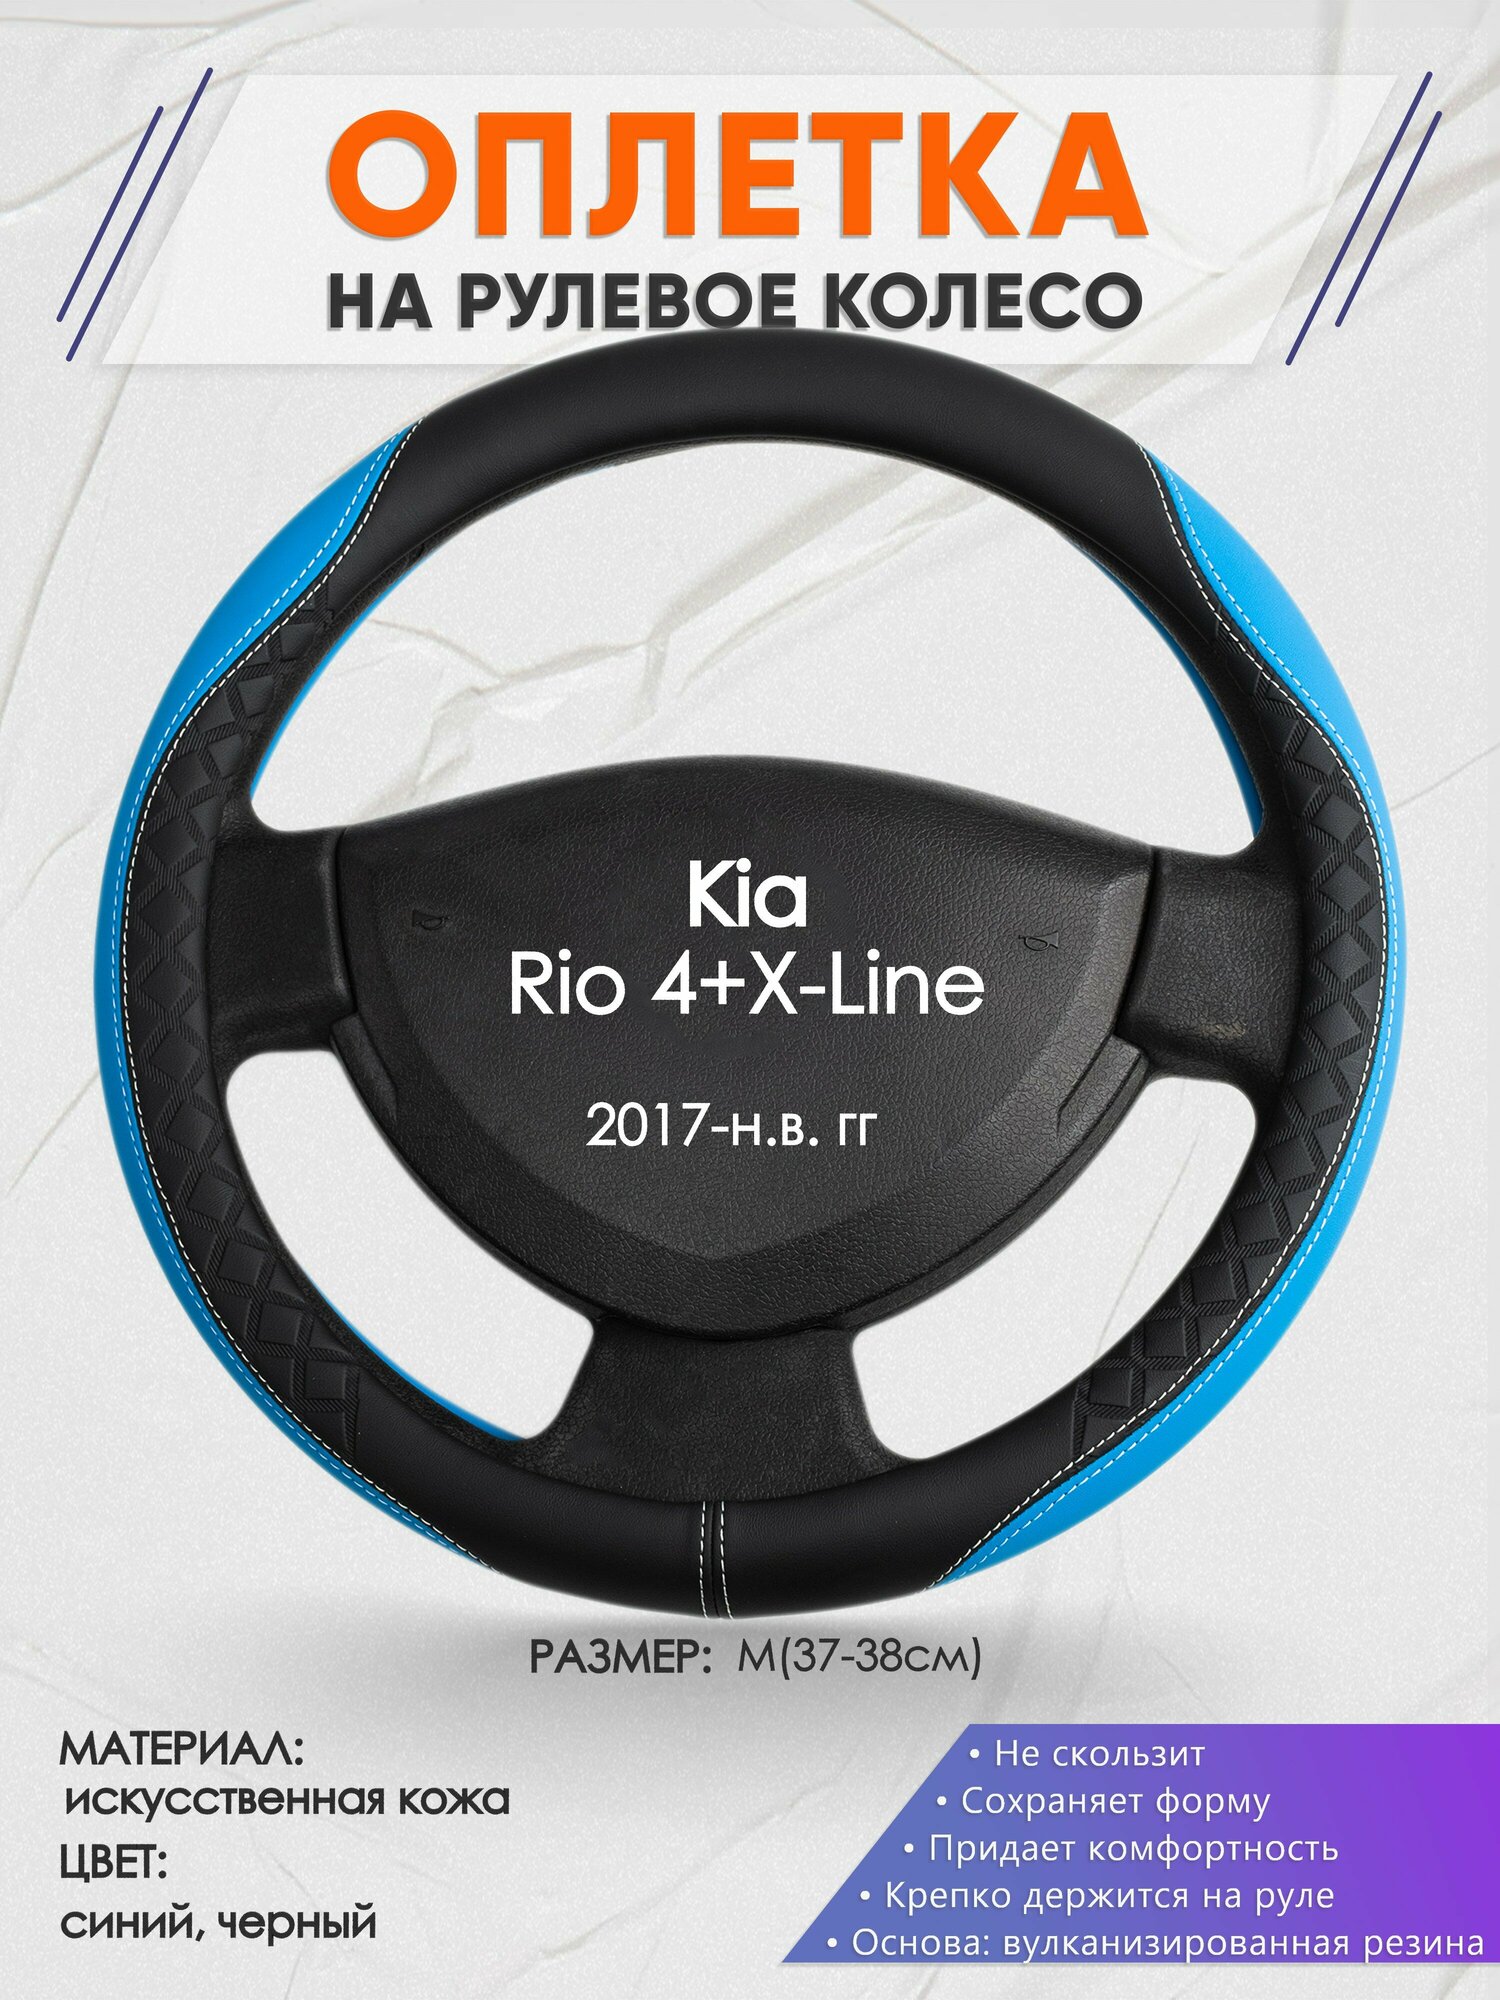 Оплетка на руль для Kia Rio 4+X-Line(Киа Рио 4 / Икс Лайн) 2017-н. в, M(37-38см), Искусственная кожа 68